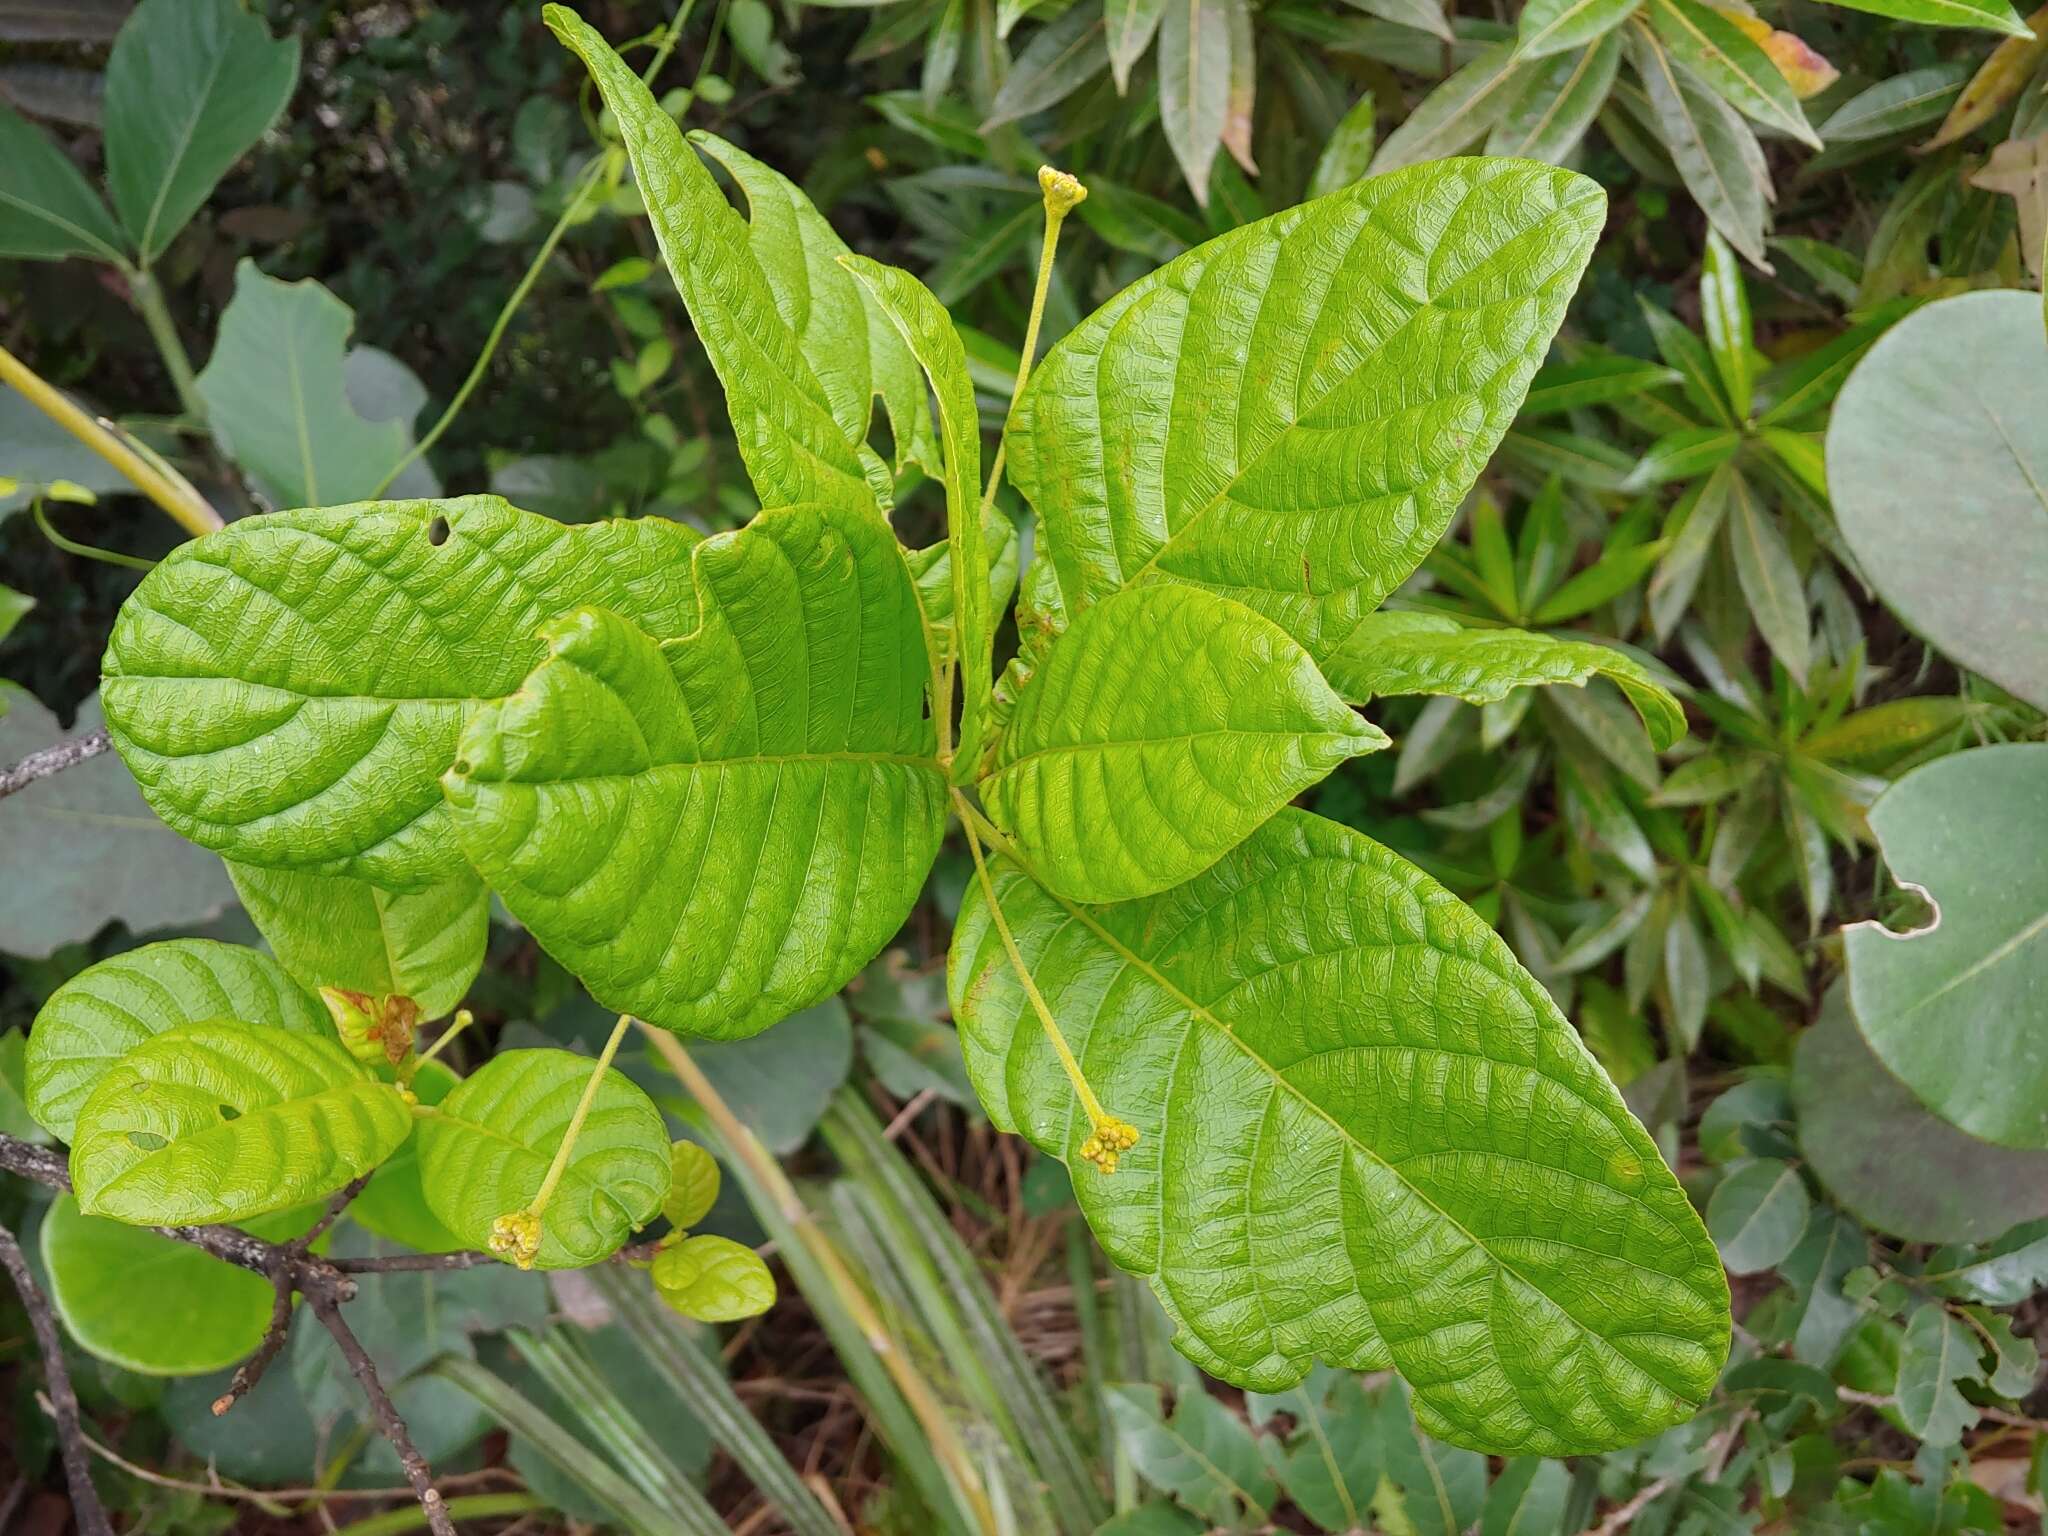 Image de Guettarda ovalifolia Urb.